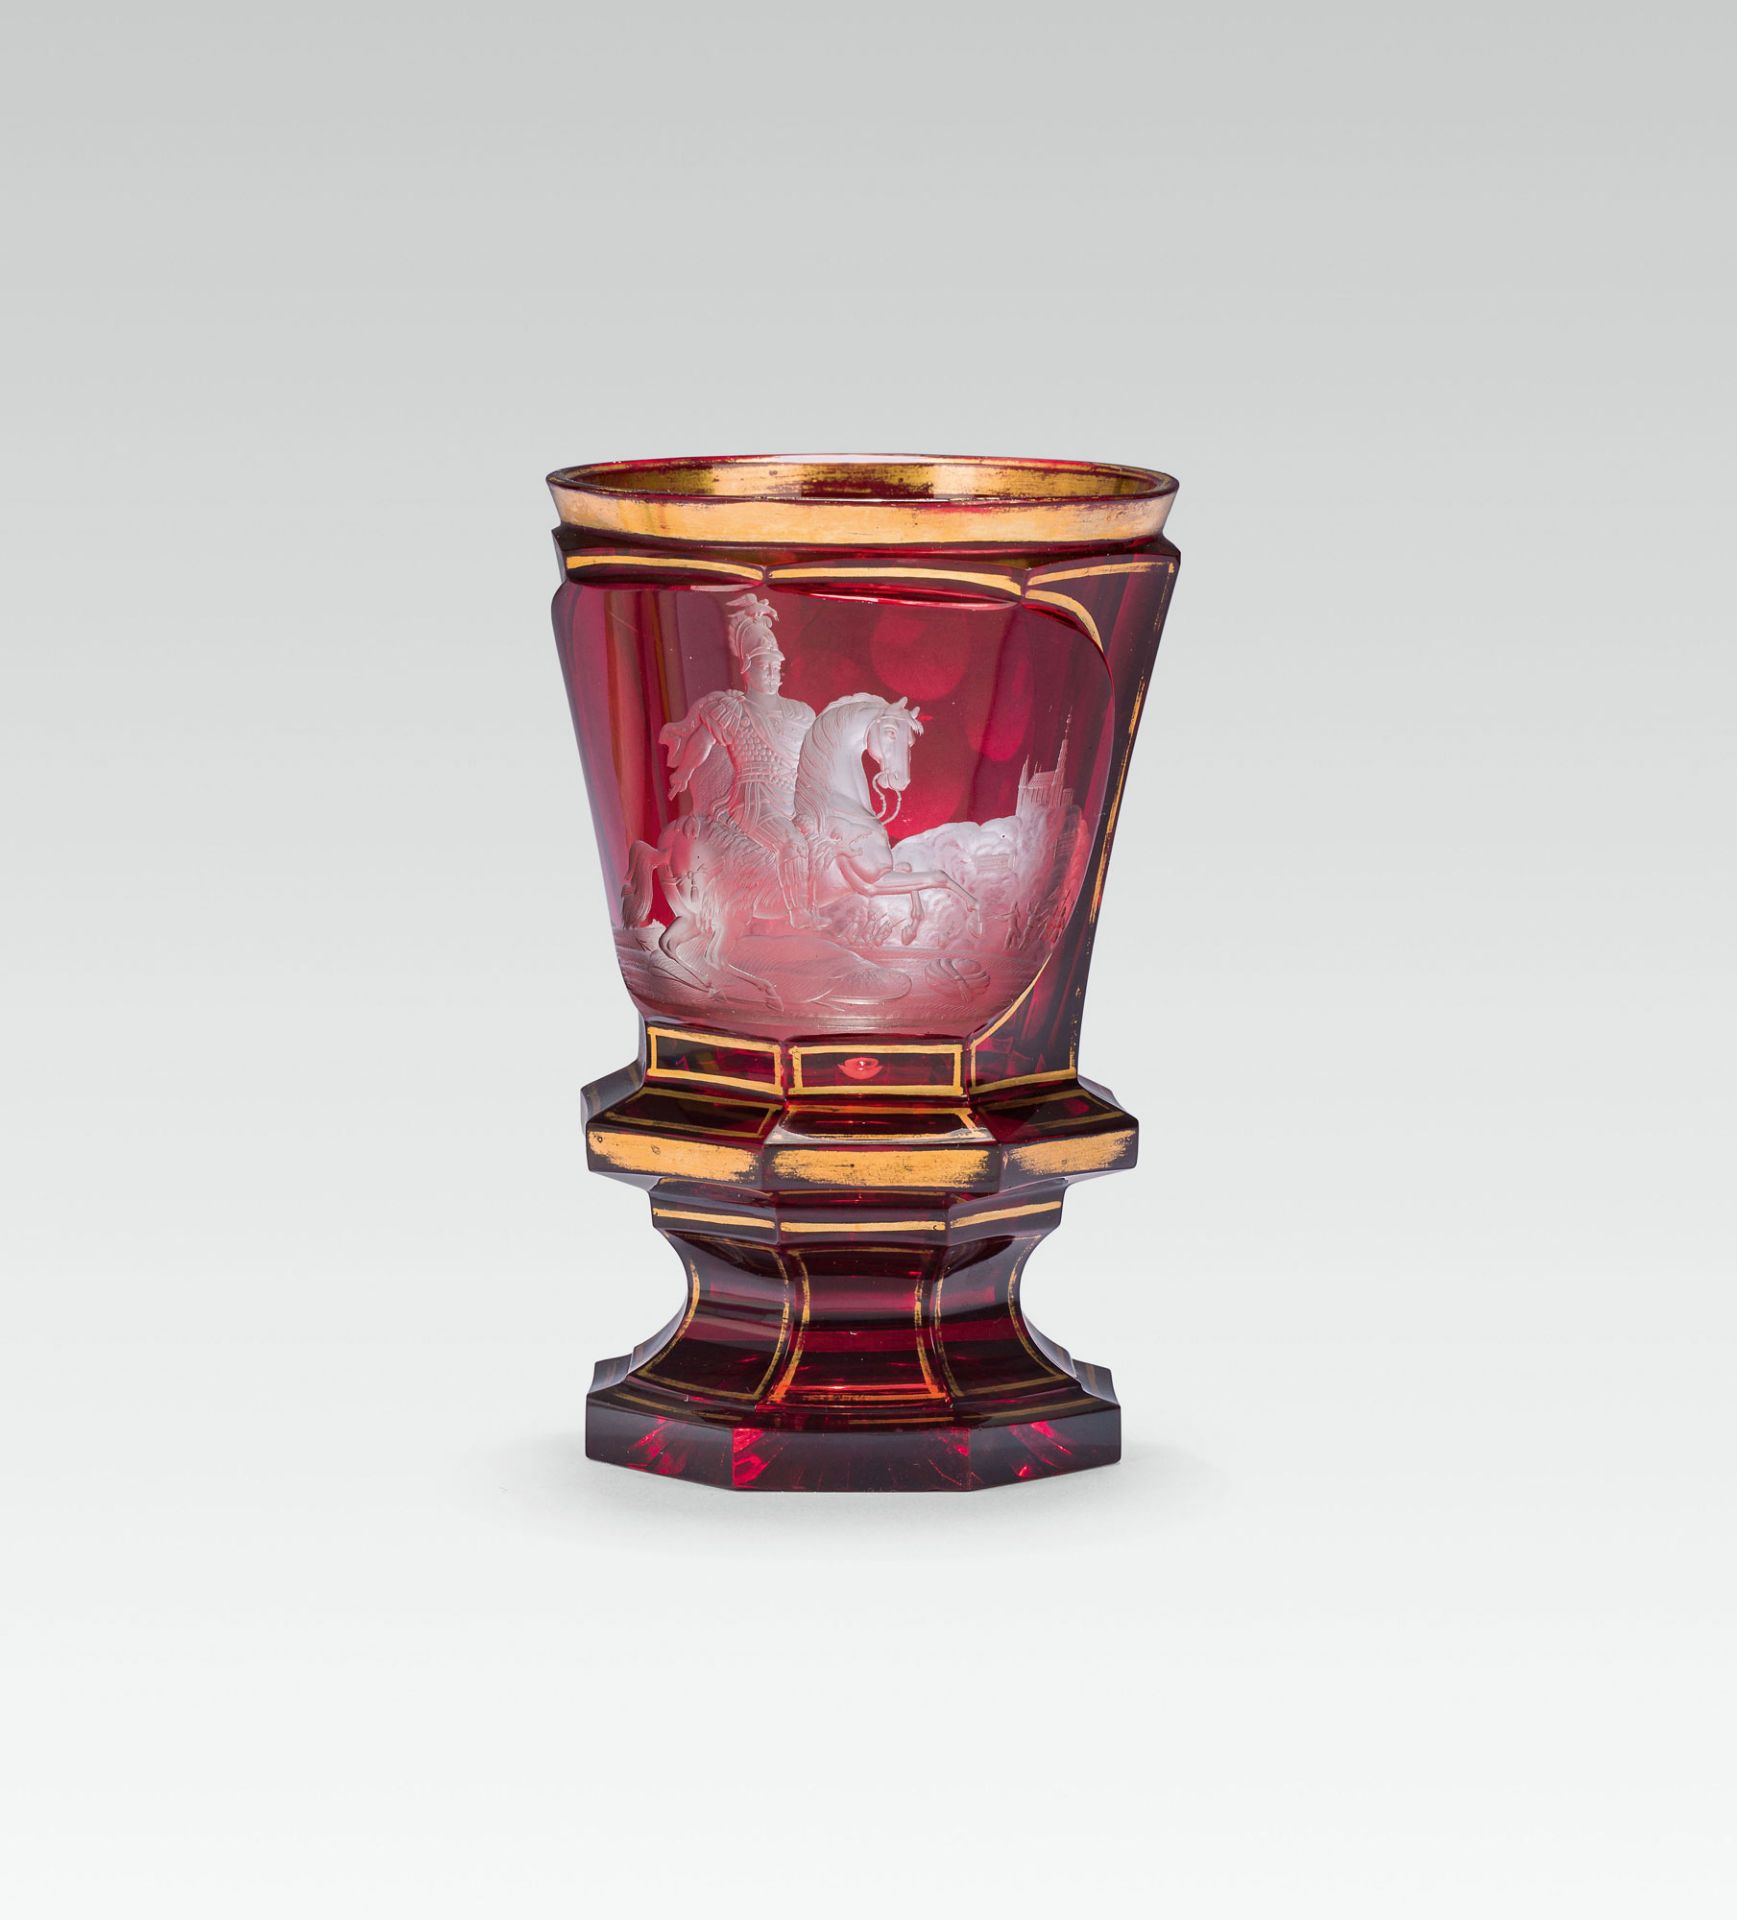 Biedermeier beakercolourless glass, glazed red, gold painting; star-shaped baseh. 13.8 cm